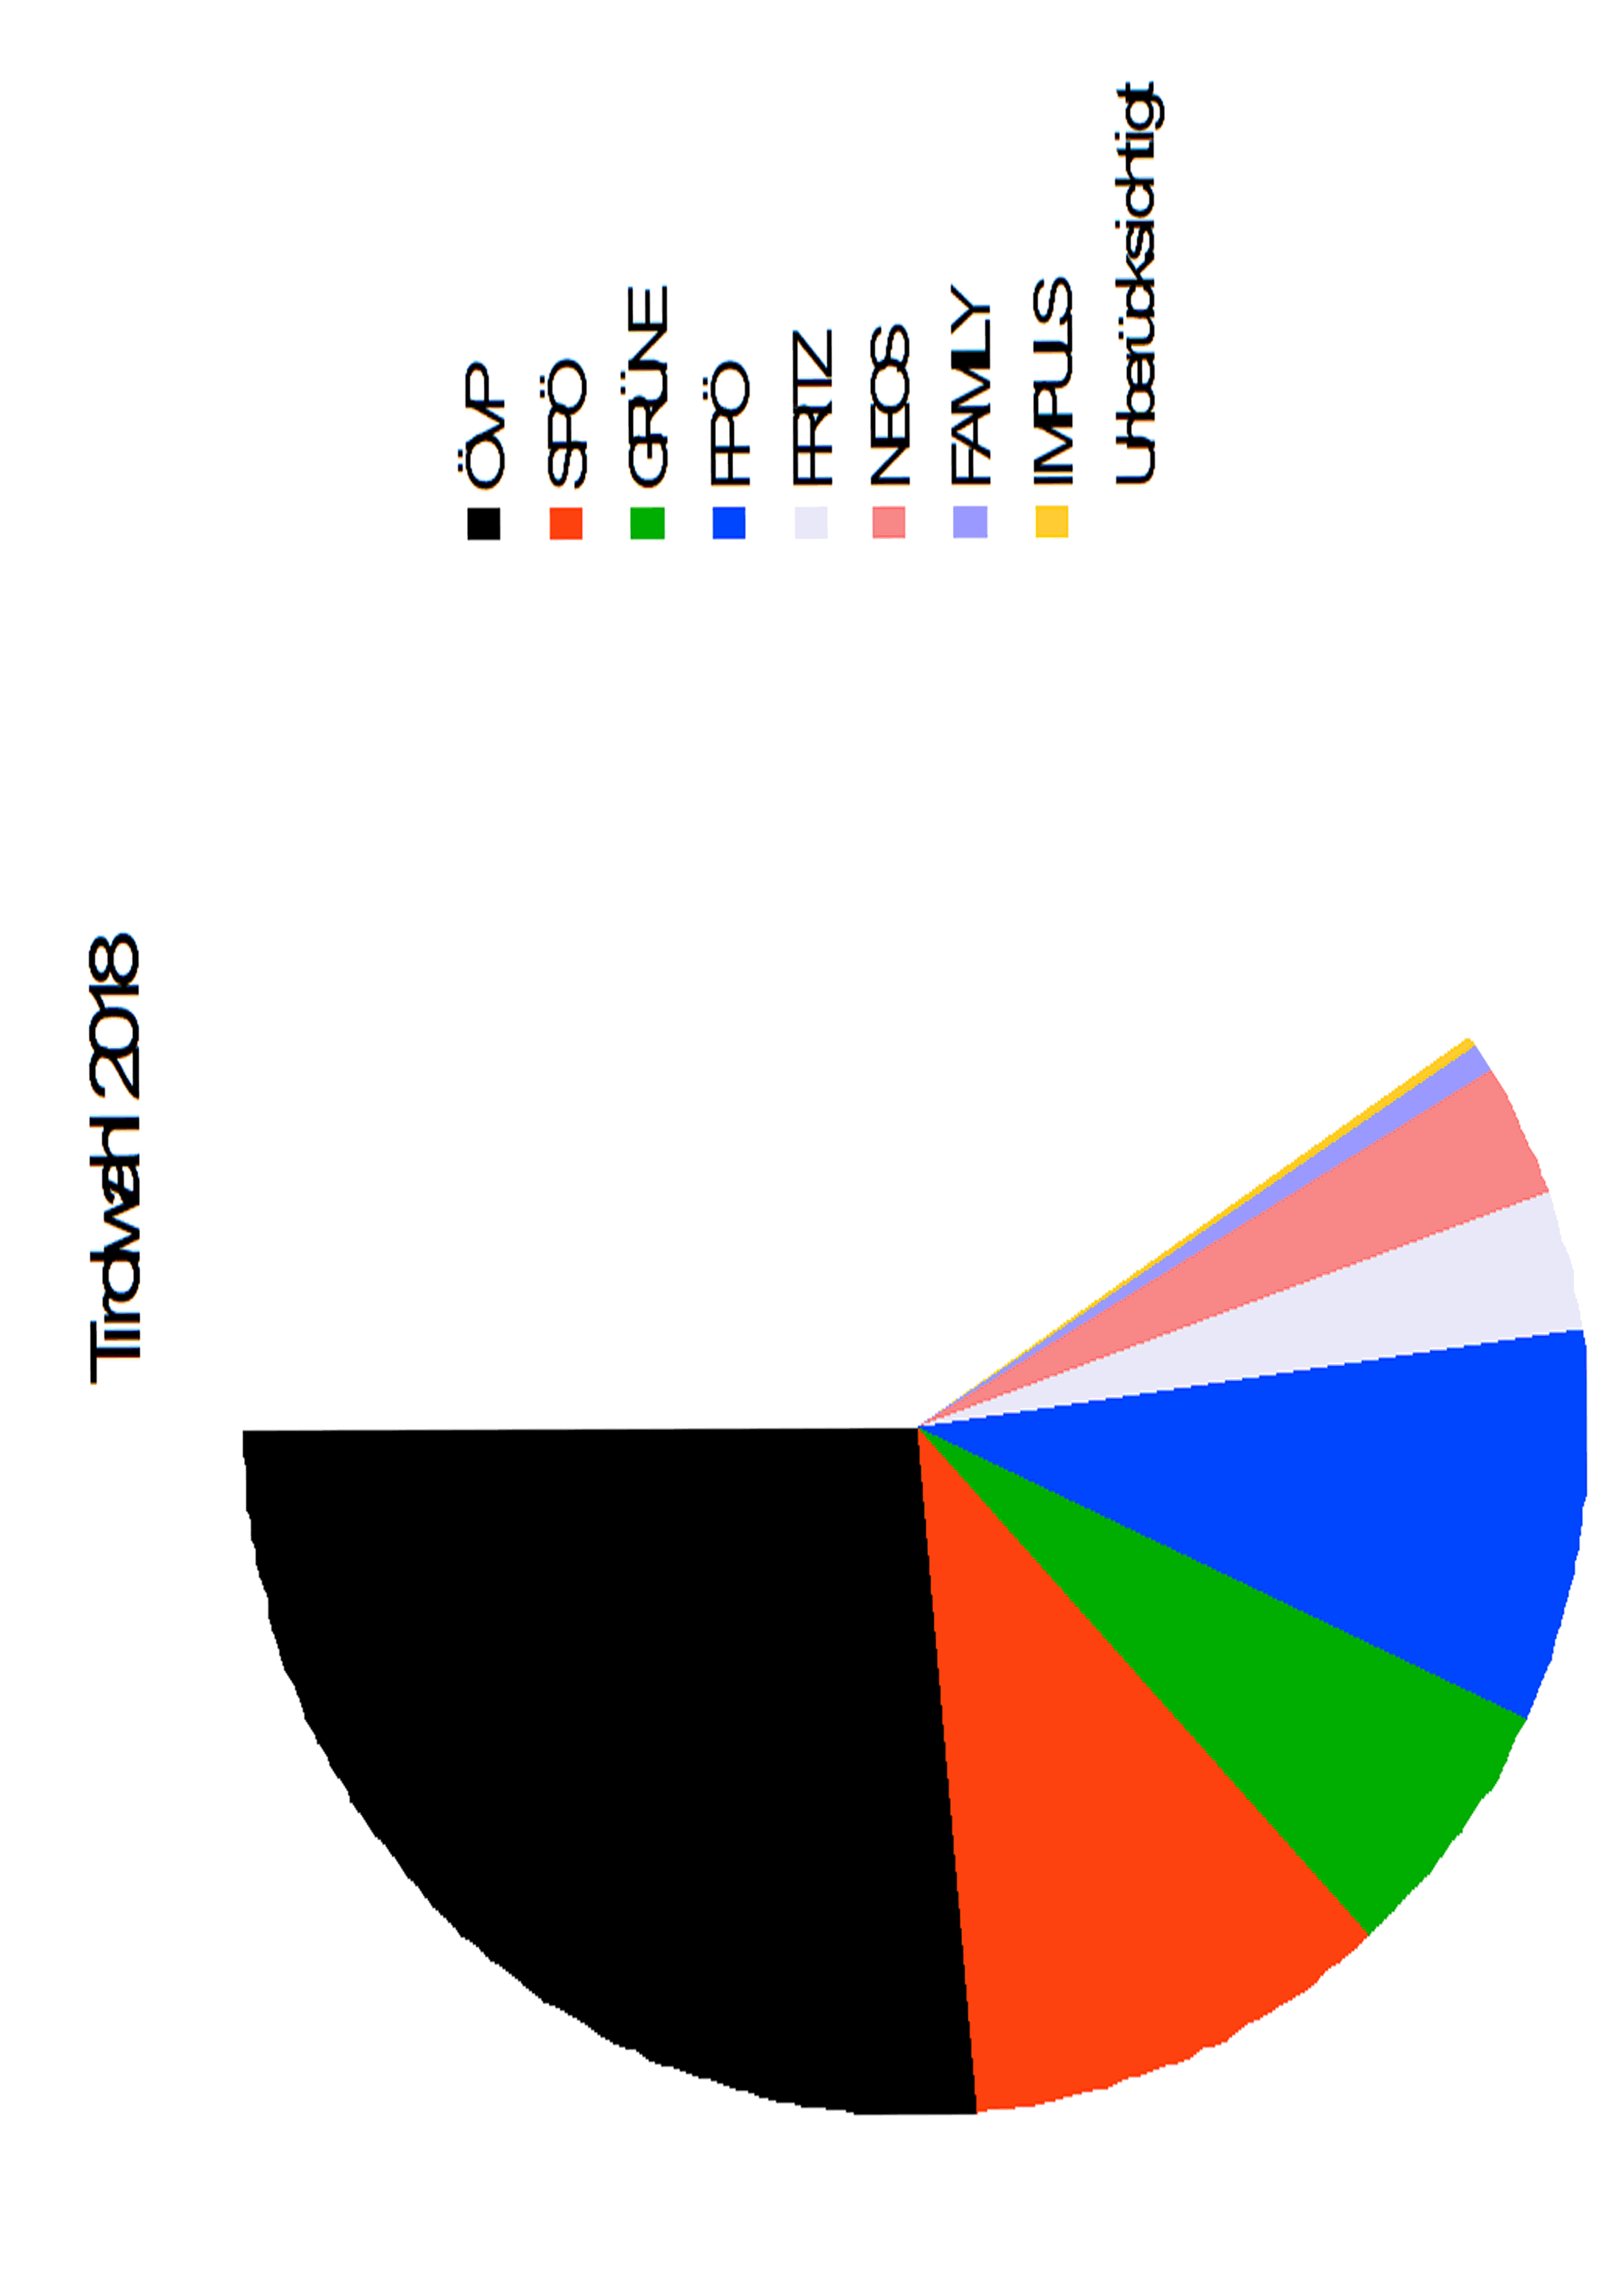 Stimmenverteilung bei den Tiroler Landtagswahlen 2018